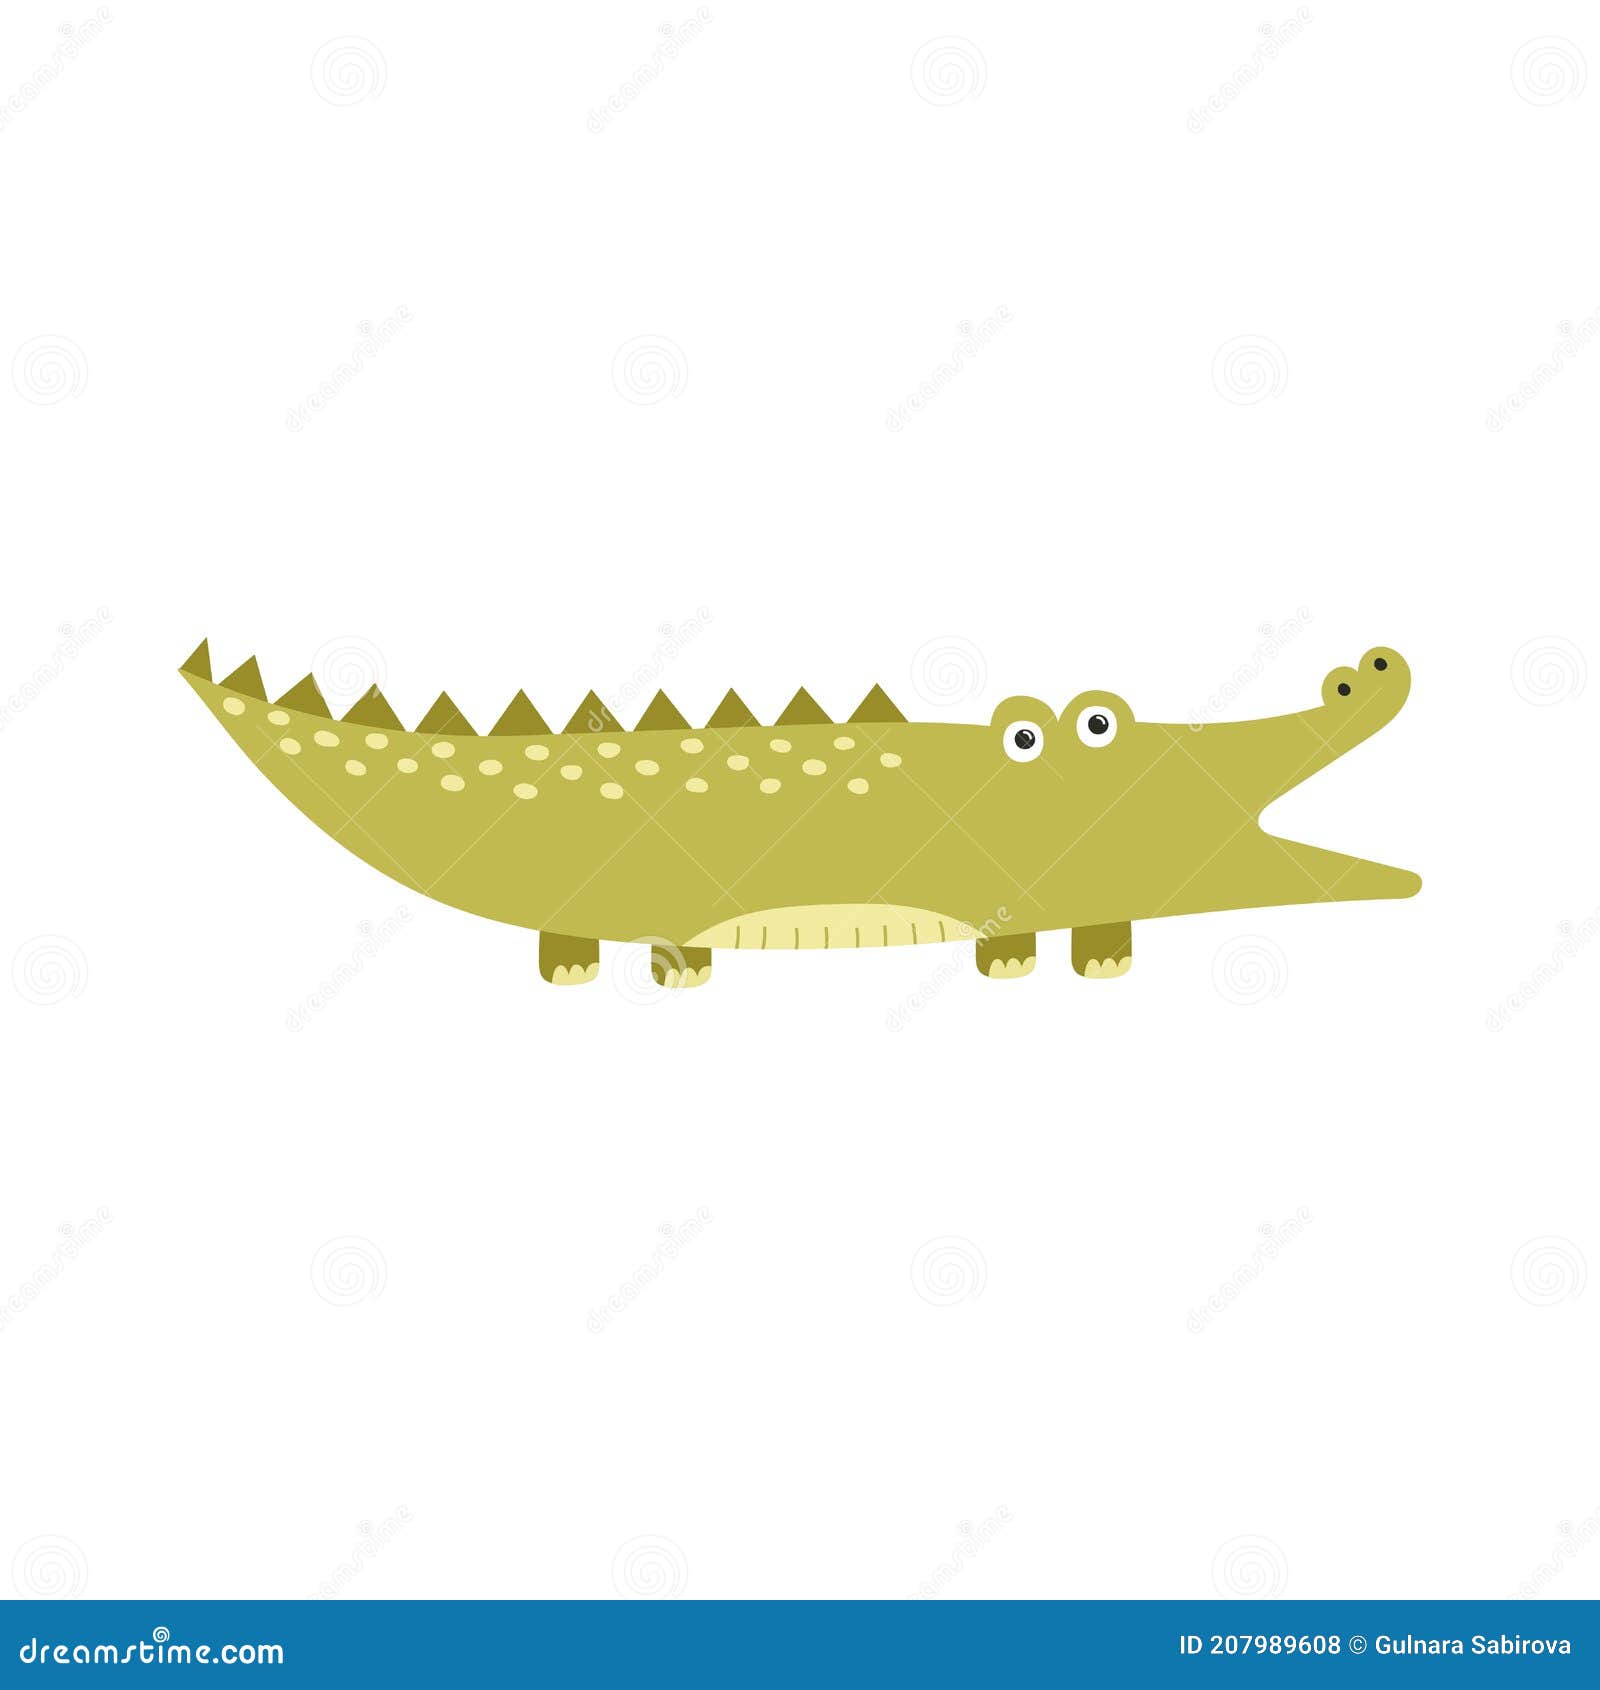 boca aberta de crocodilo enquanto nadava no vetor de ilustração